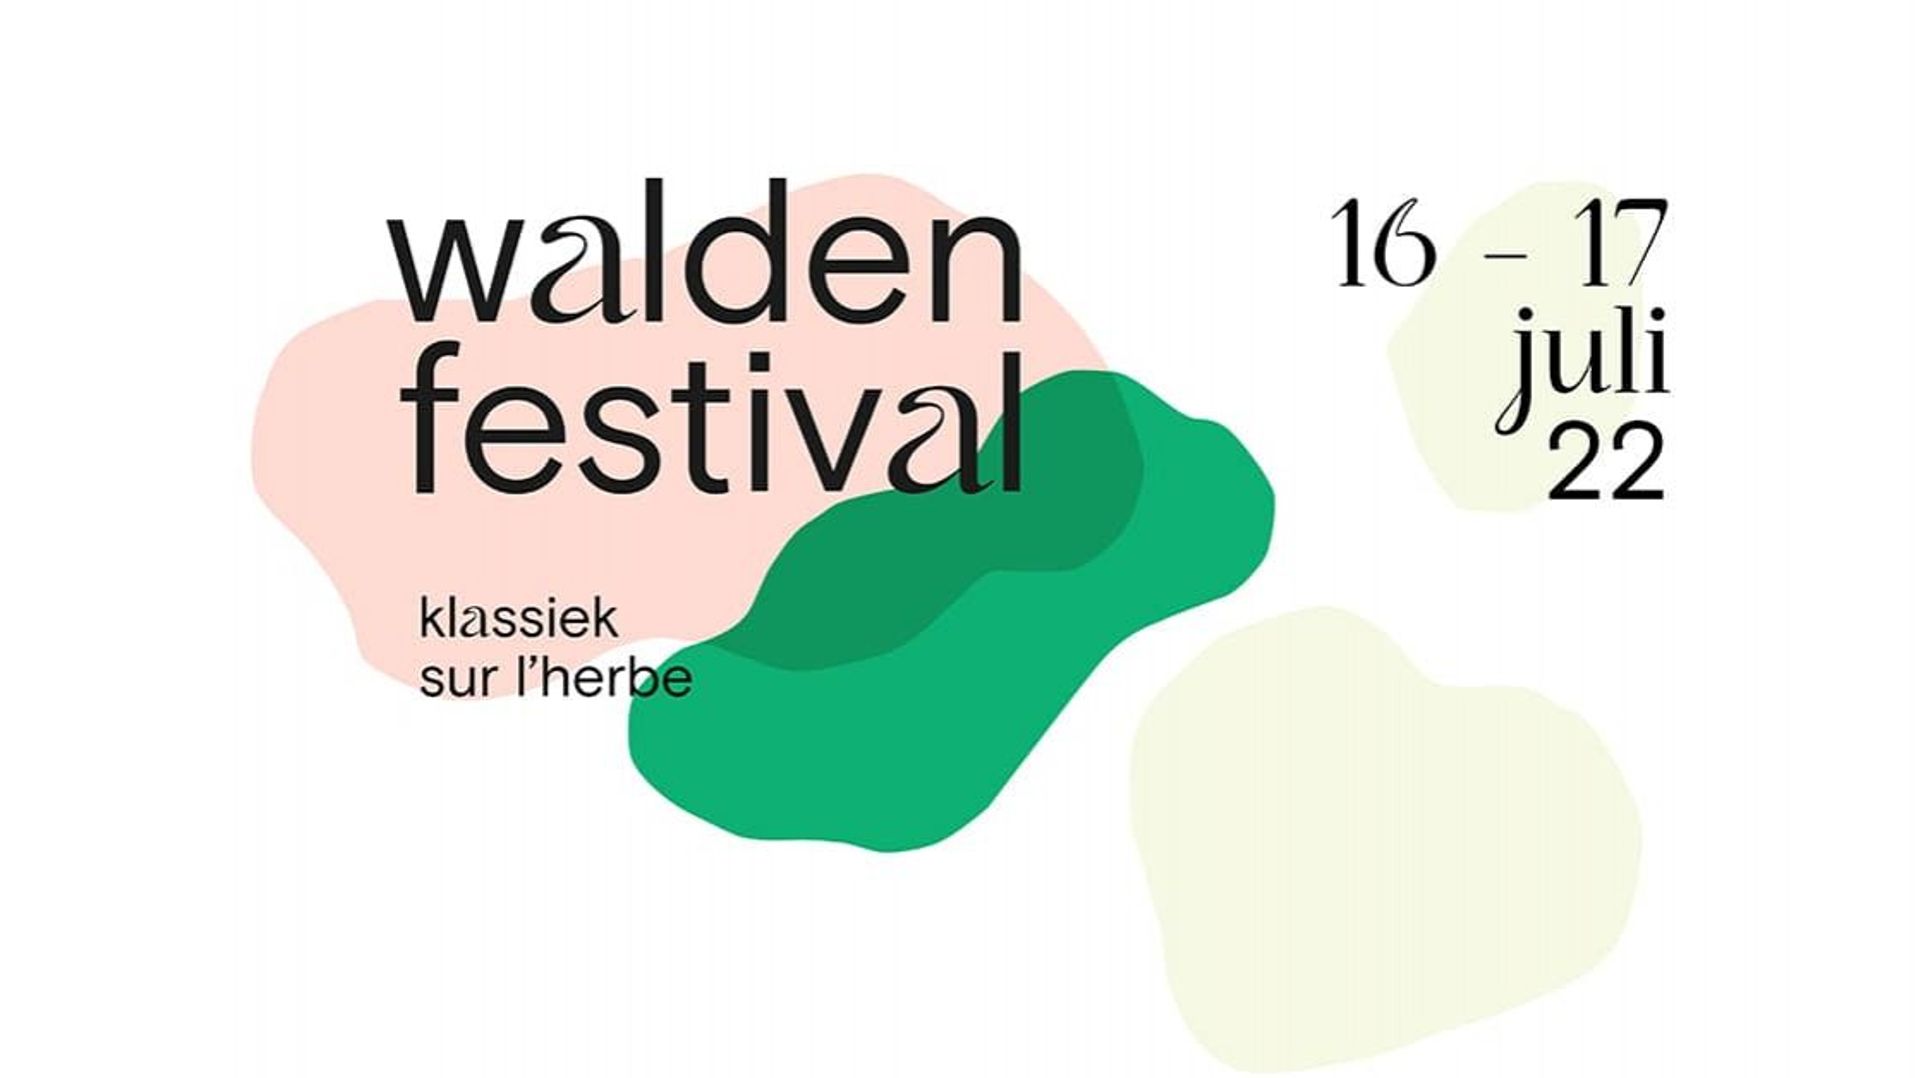 Le nouveau Walden Festival propose deux jours de musique classique au parc Léopold